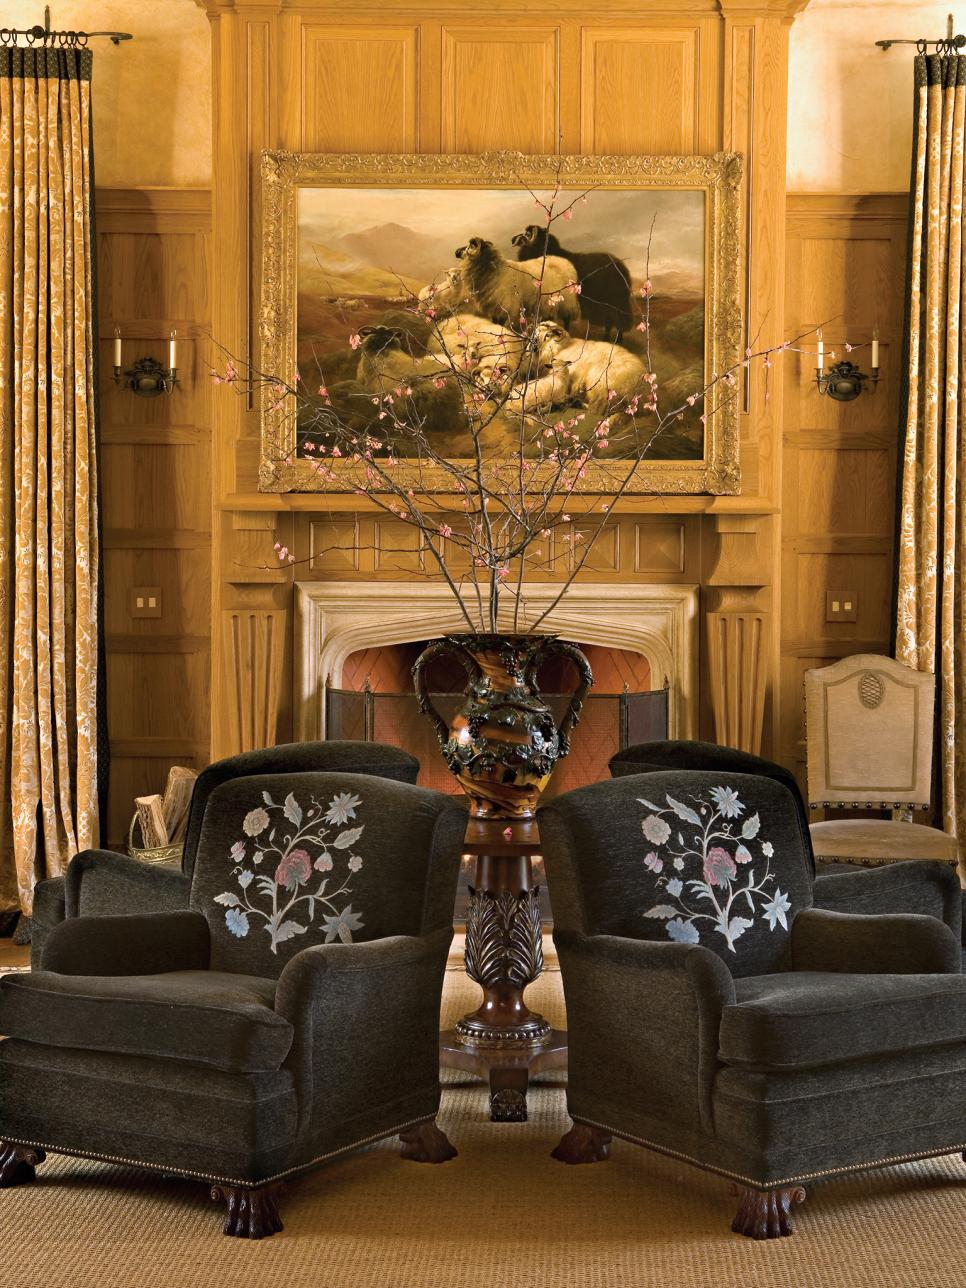 Black Velvet Club Chairs Center a Vase in the Living Room